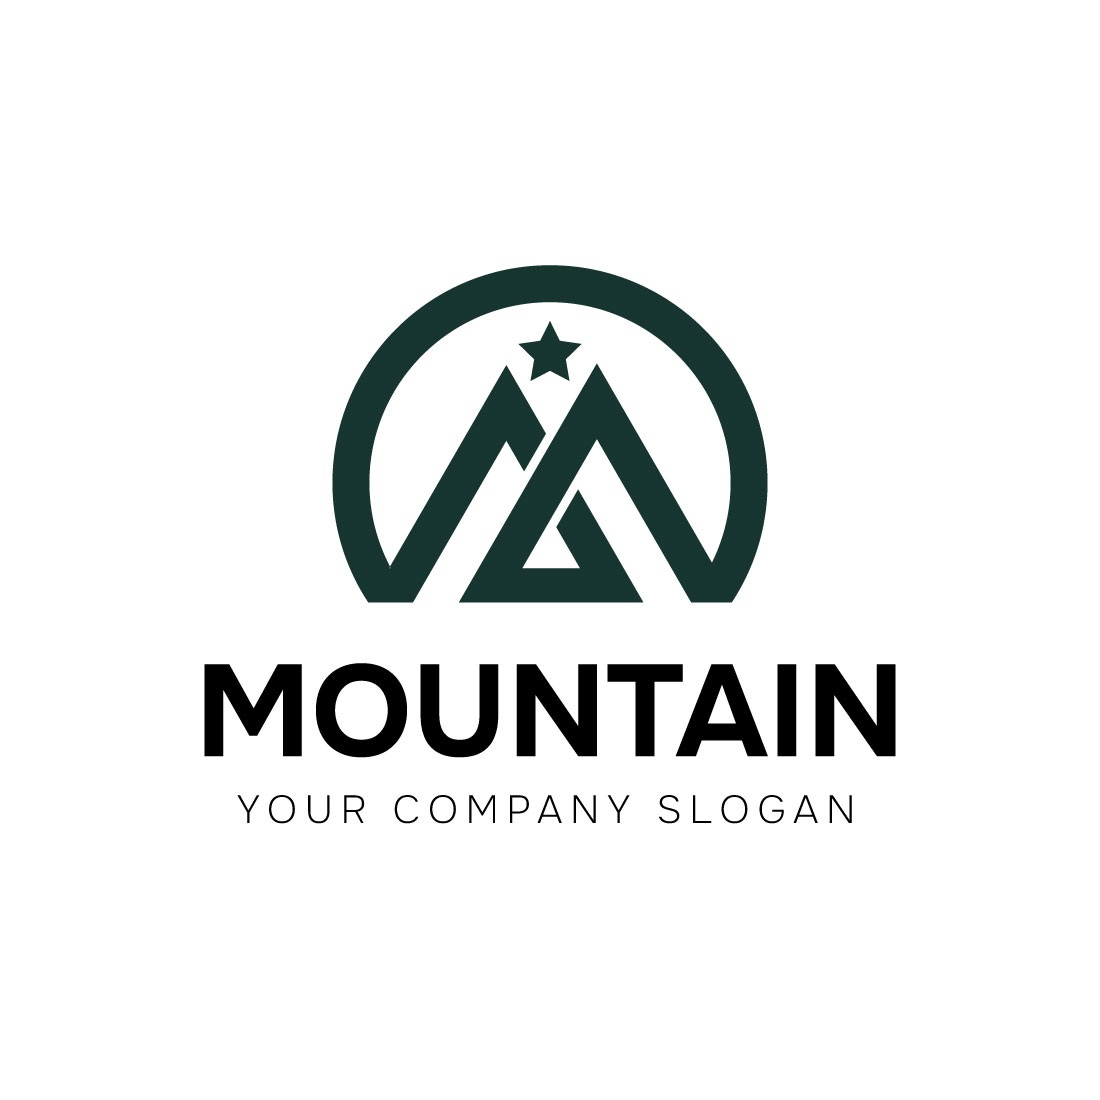 Mountain logo design preview image.